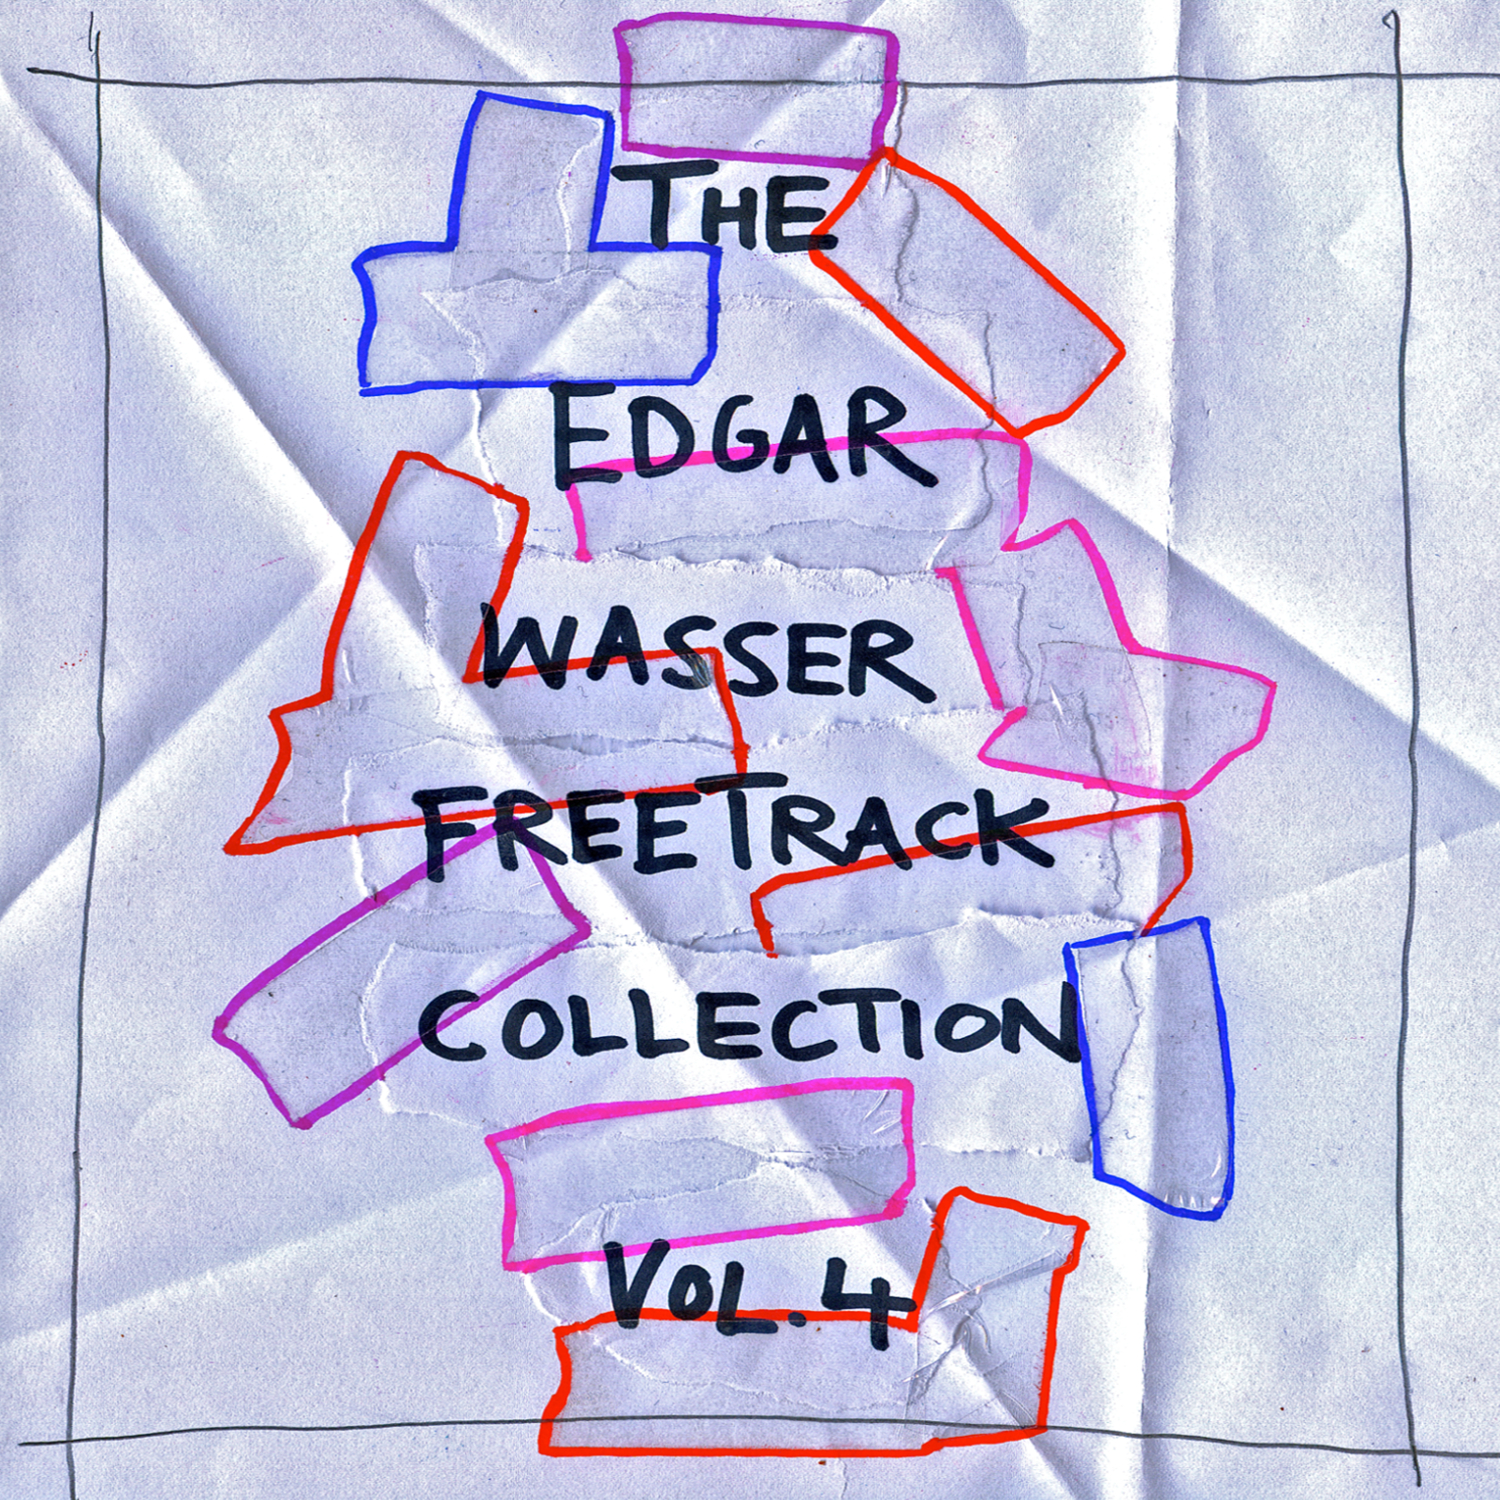 EDGAR WASSER - FREETRACK COLLECTION VOL.4 | FREE DOWNLOAD IM ATOMLABOR BLOG